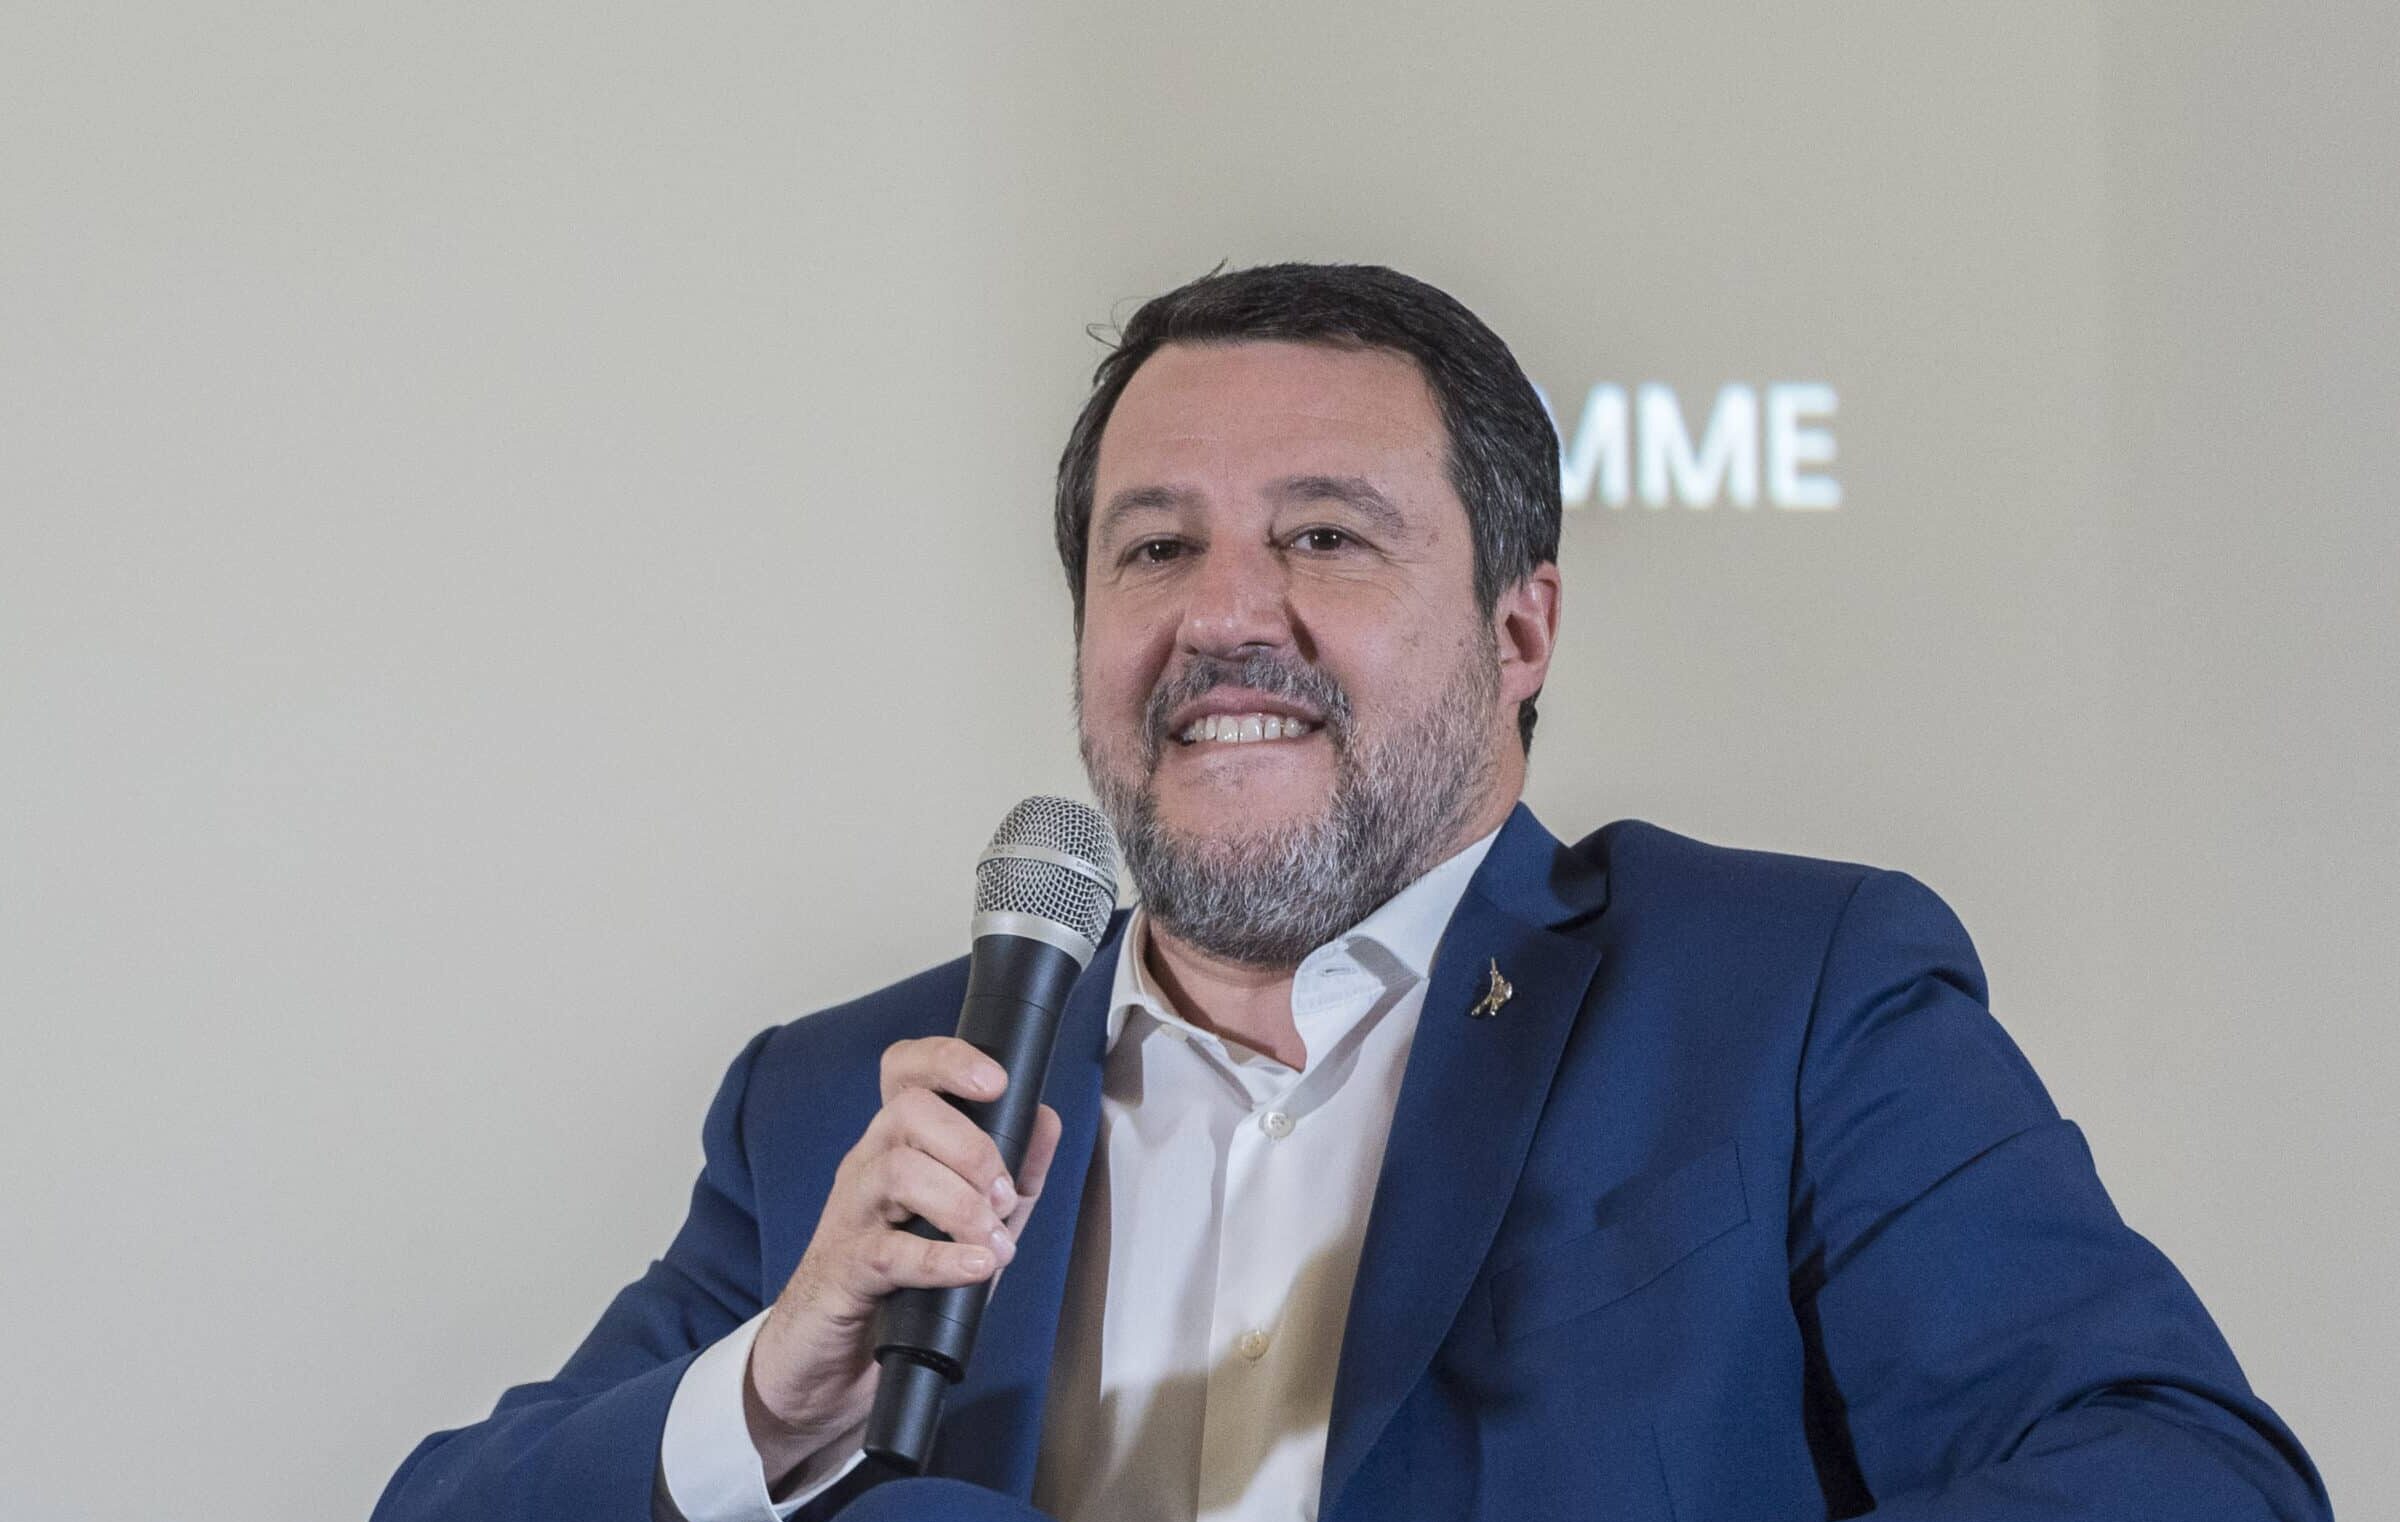 Ogni scusa è buona per precettare: così Salvini continua a cancellare il diritto di sciopero